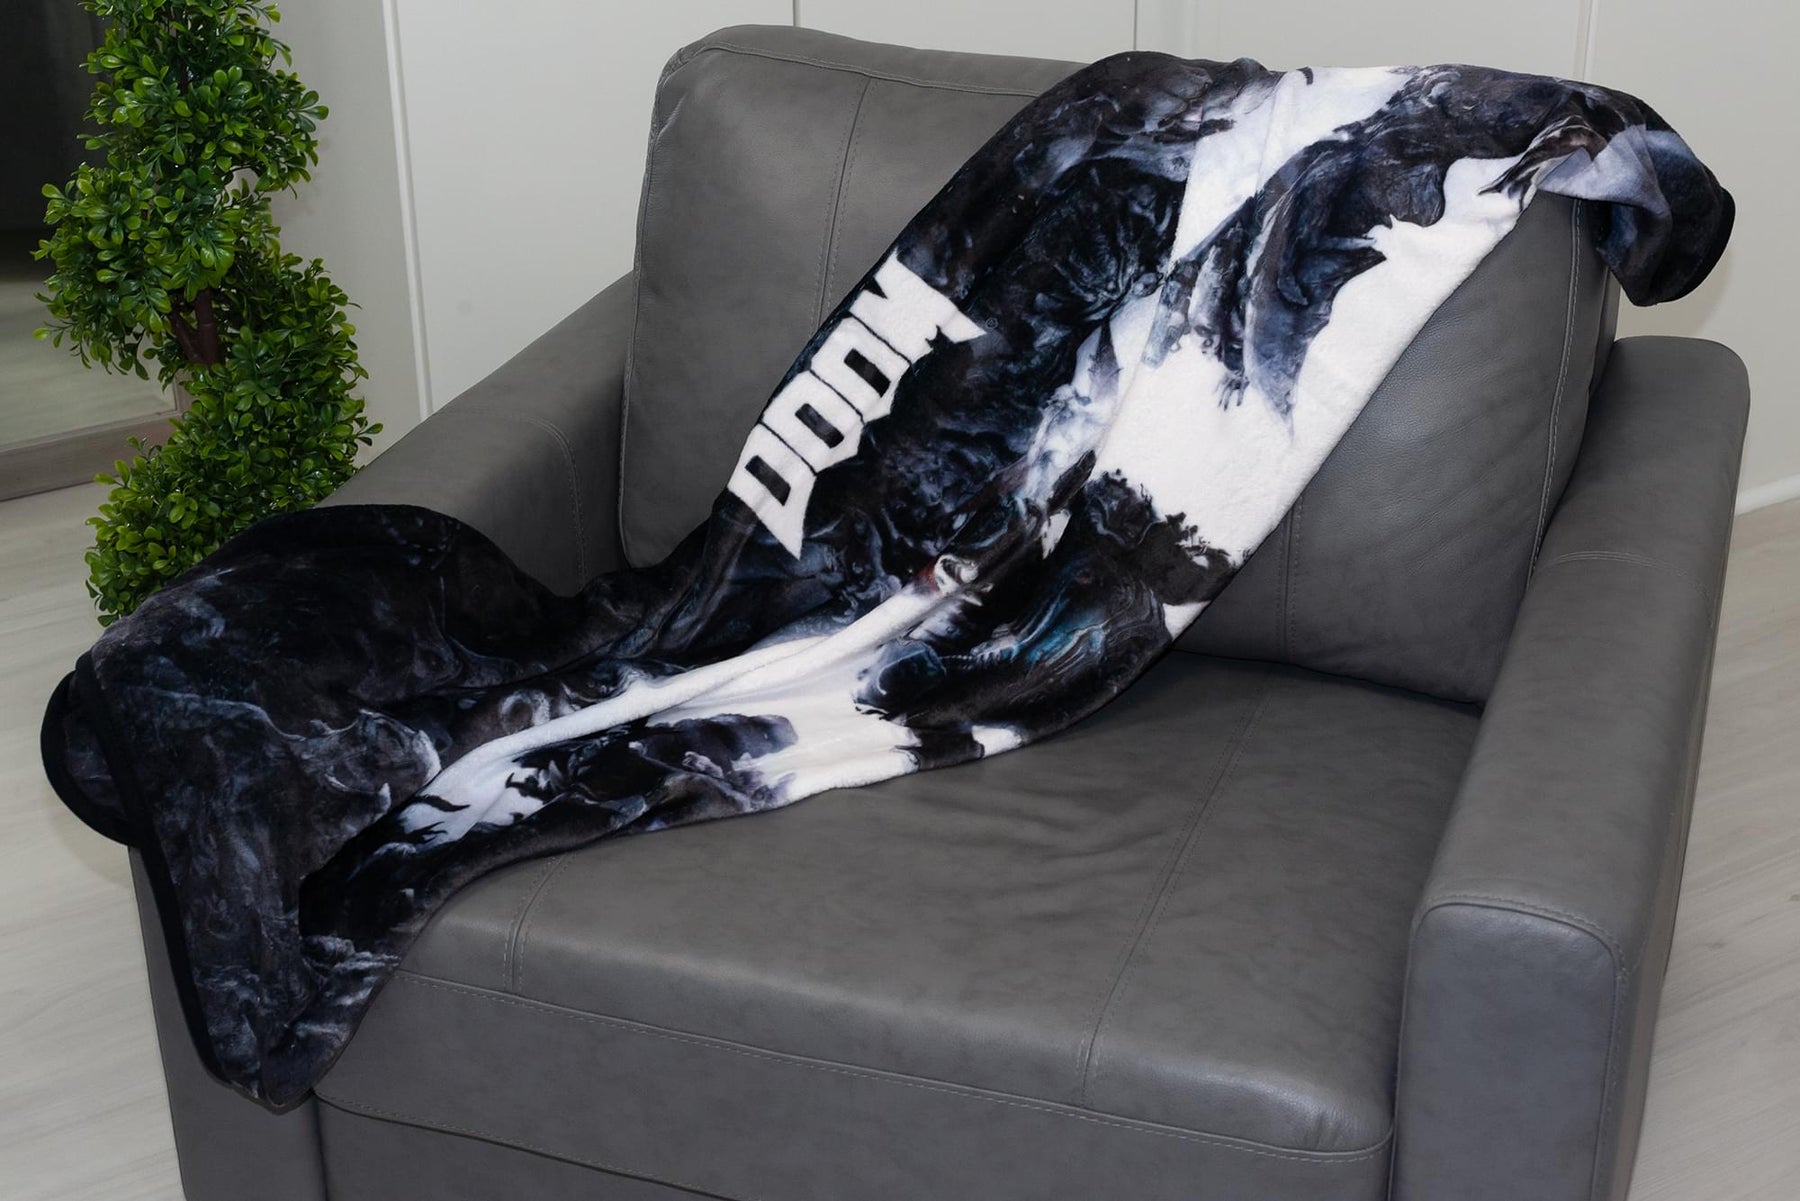 Doom Eternal Doomslayer 45x 60 Inch Fleece Throw Blanket